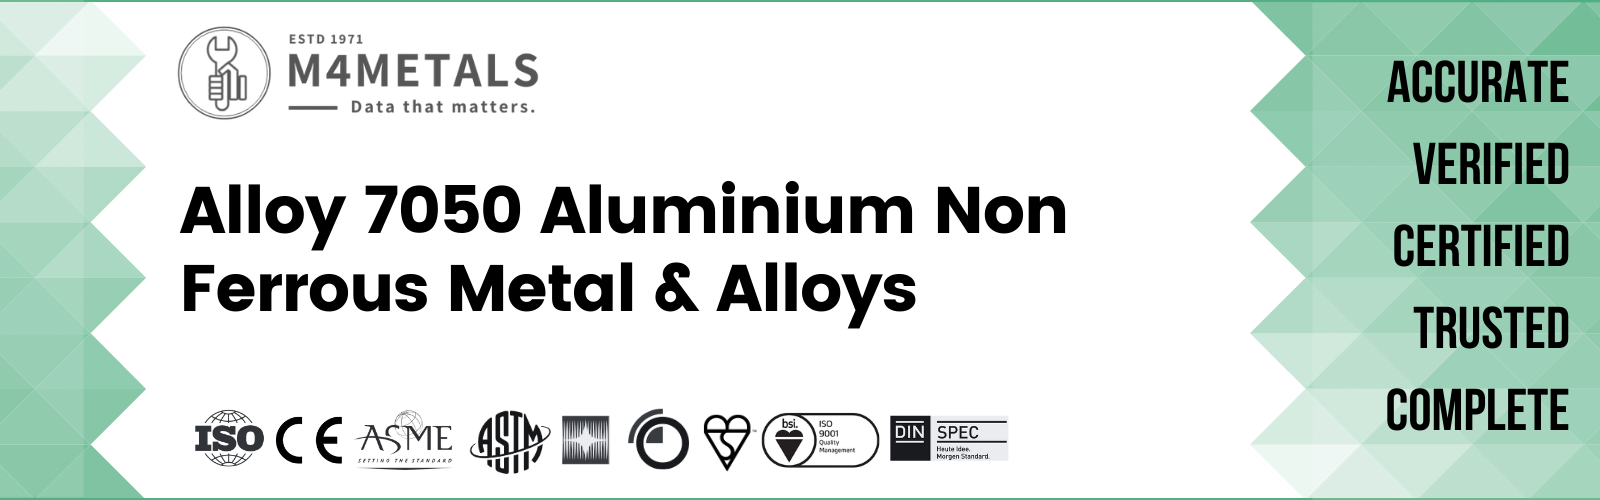 Aluminium Alloy 7050